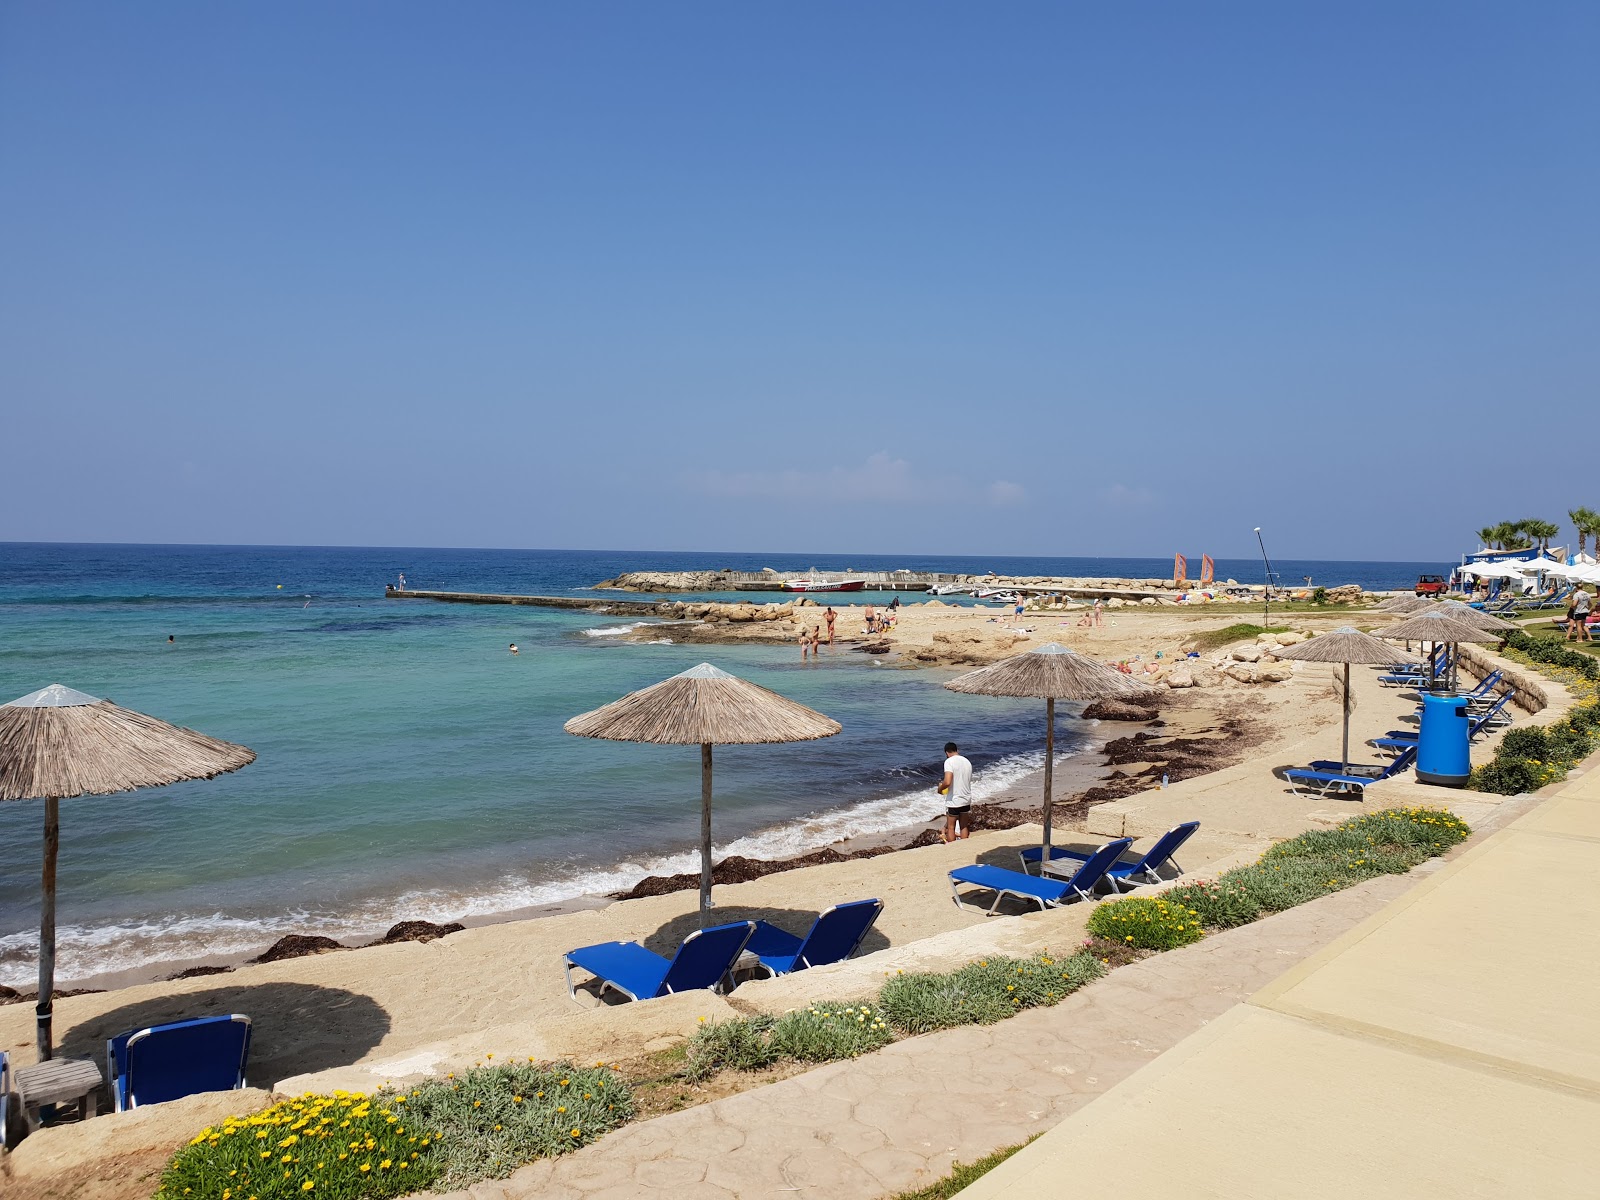 Foto af Pachyammos beach - populært sted blandt afslapningskendere